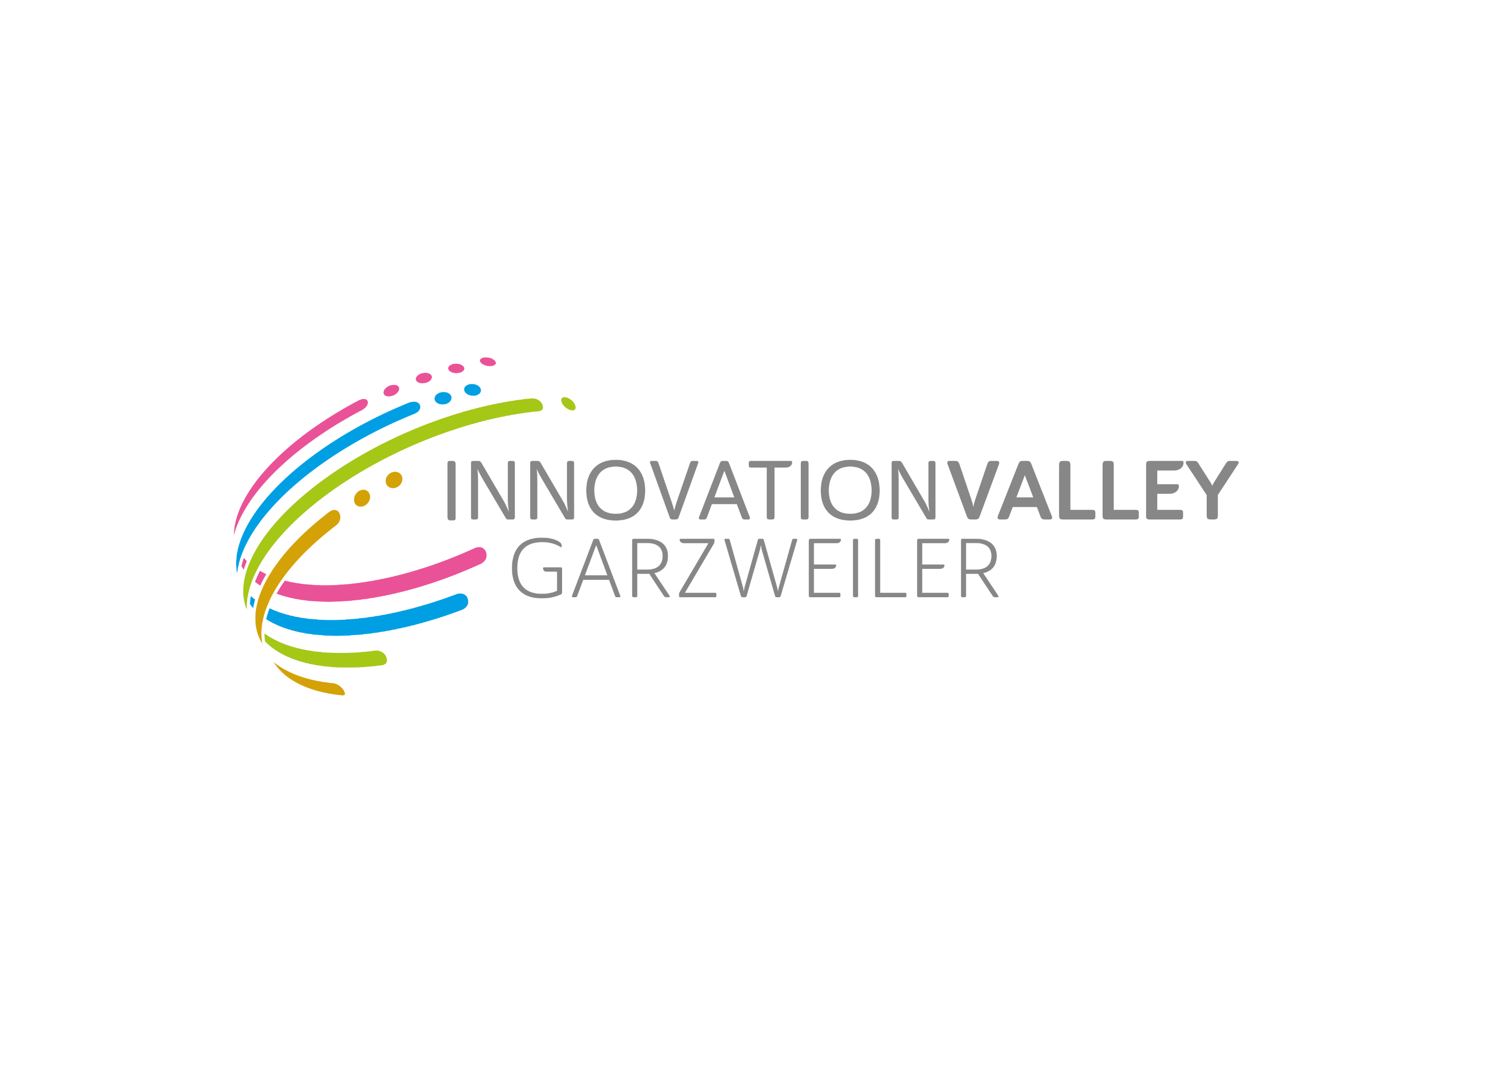 Innovation Valley Garzweiler: Projektstart mit neuem Auftritt